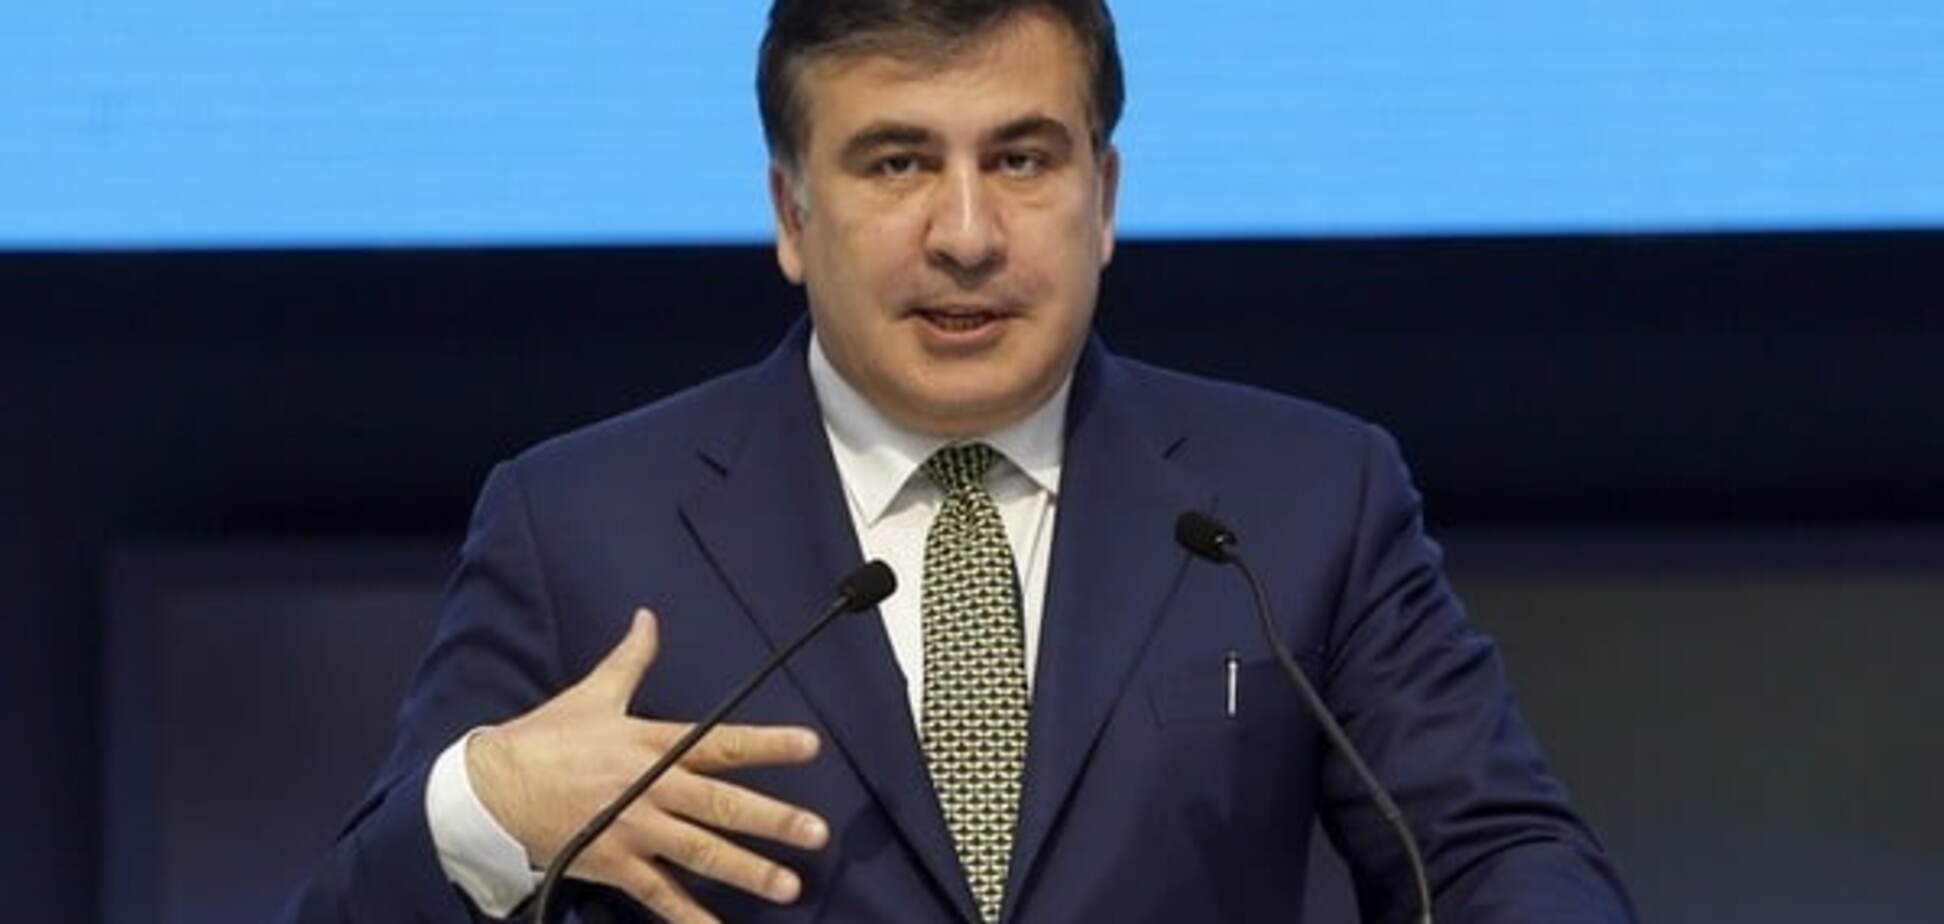 Блогер: политическое шоу от Саакашвили - попытка перебраться в Киев на красивых лозунгах